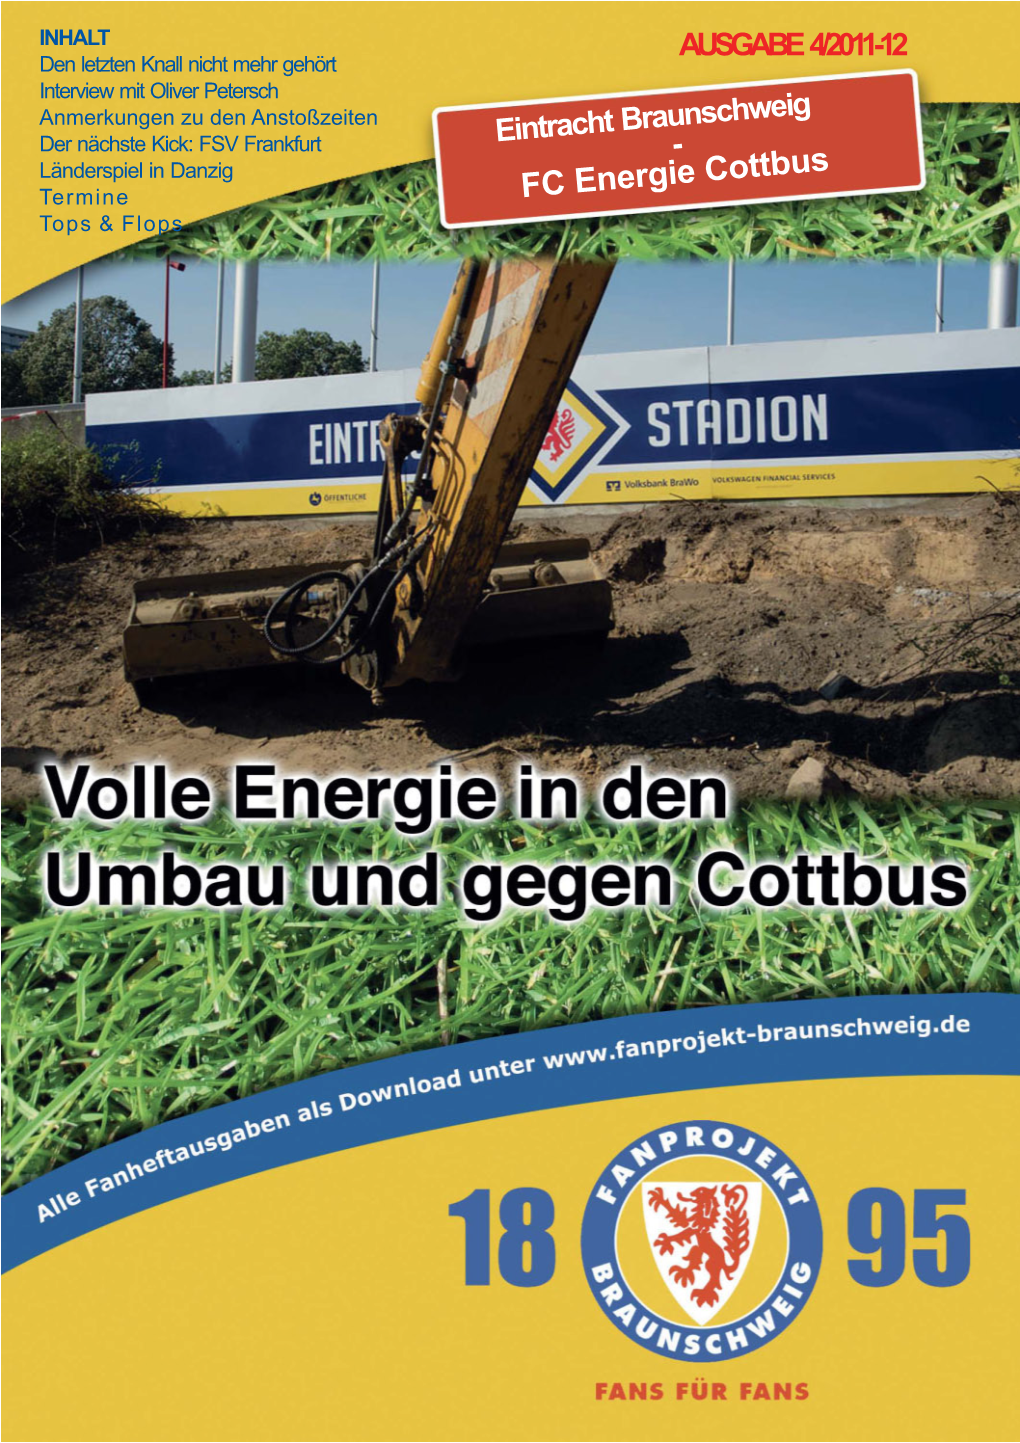 FC Energie Cottbus Top S & F L Op S Inhalt Kolumne "Eintrachtstadion" S